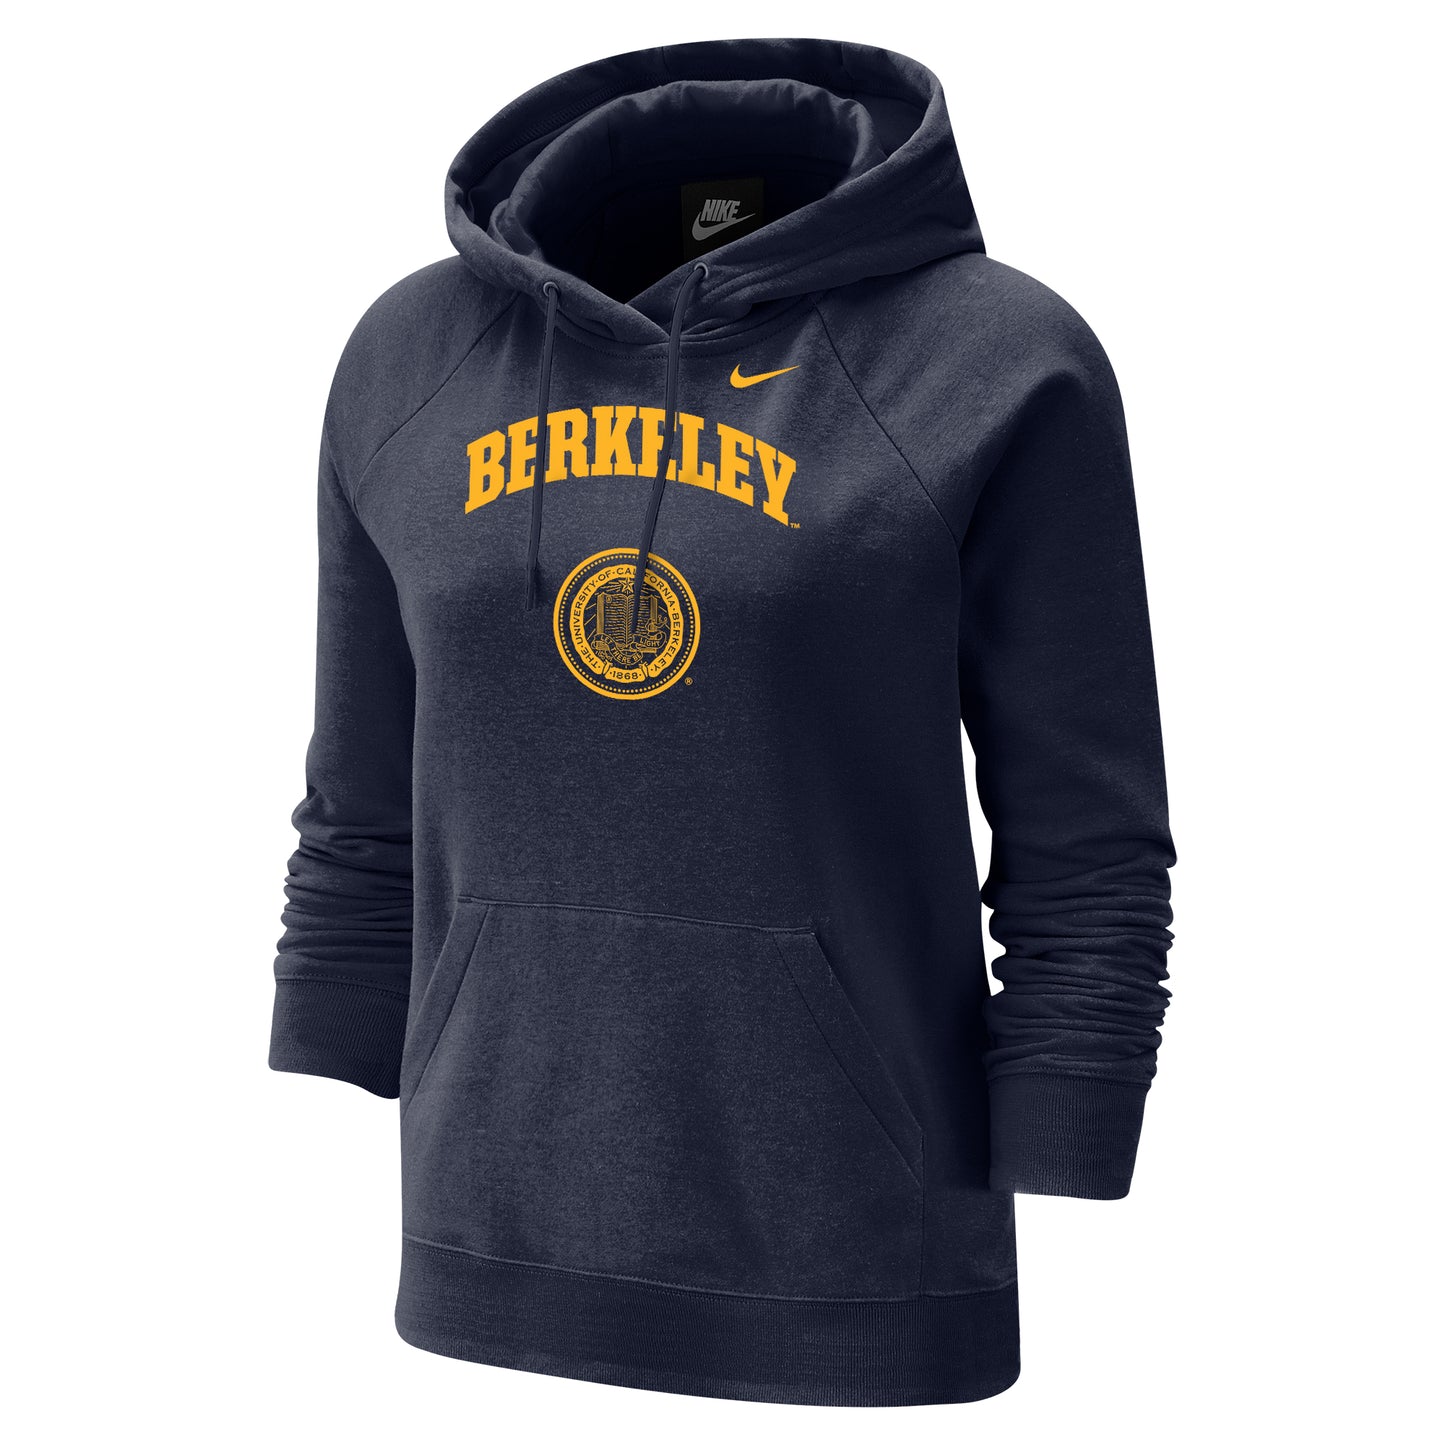 U.C. Berkeley Cal Nike women's varsity fleece hoodie with Berkeley arch & seal graphic-Navy-Shop College Wear